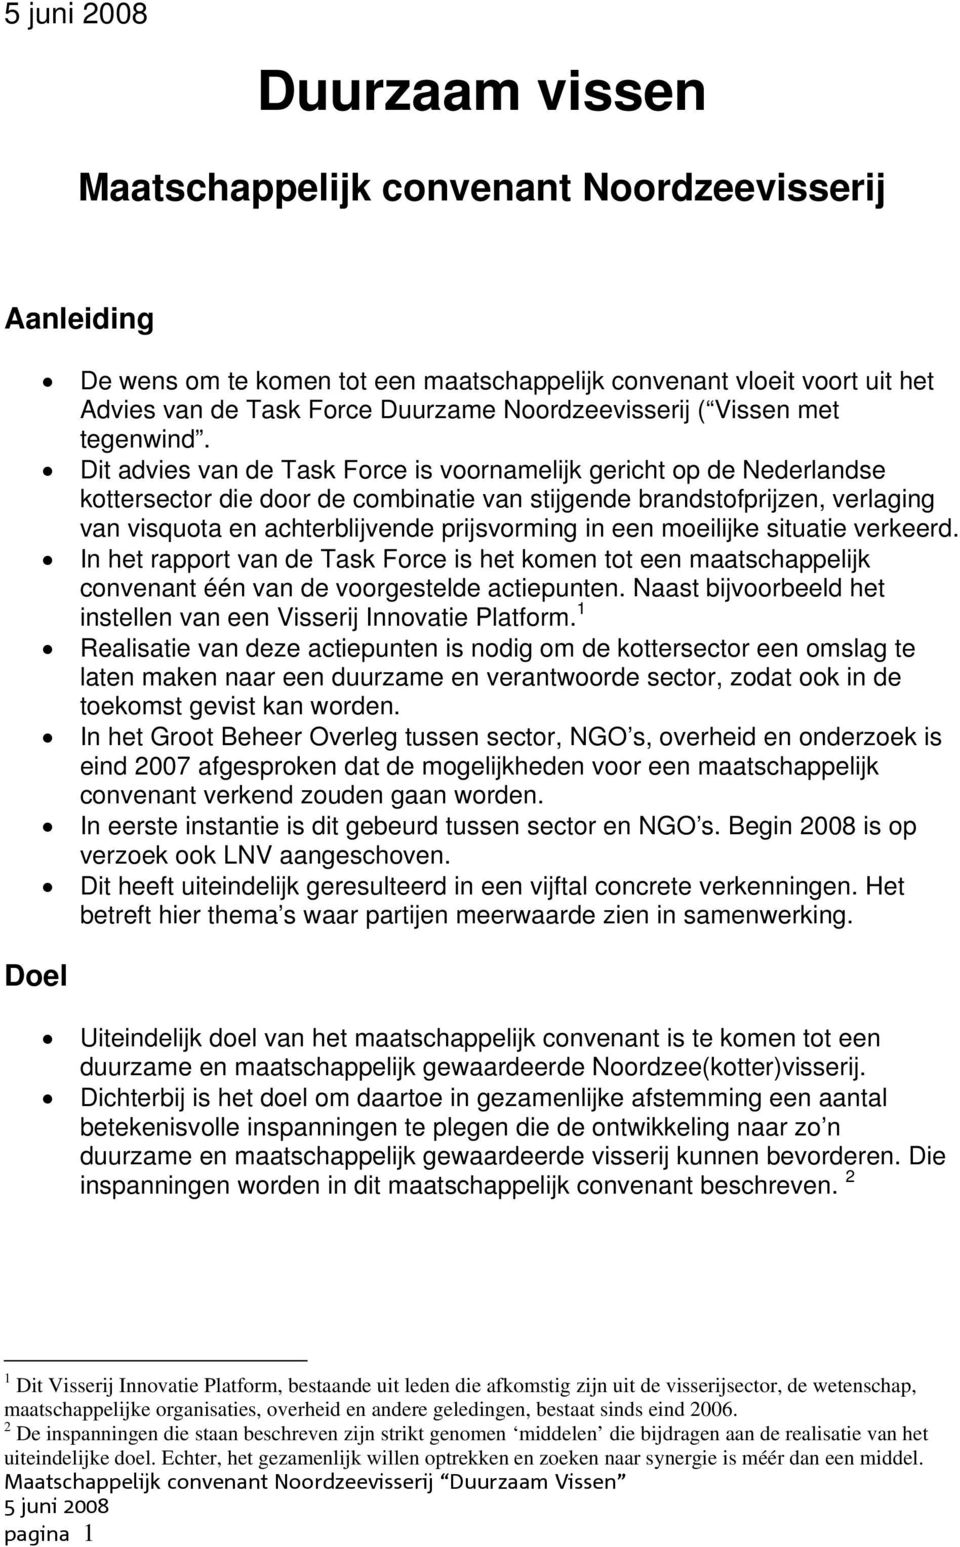 Dit advies van de Task Force is voornamelijk gericht op de Nederlandse kottersector die door de combinatie van stijgende brandstofprijzen, verlaging van visquota en achterblijvende prijsvorming in